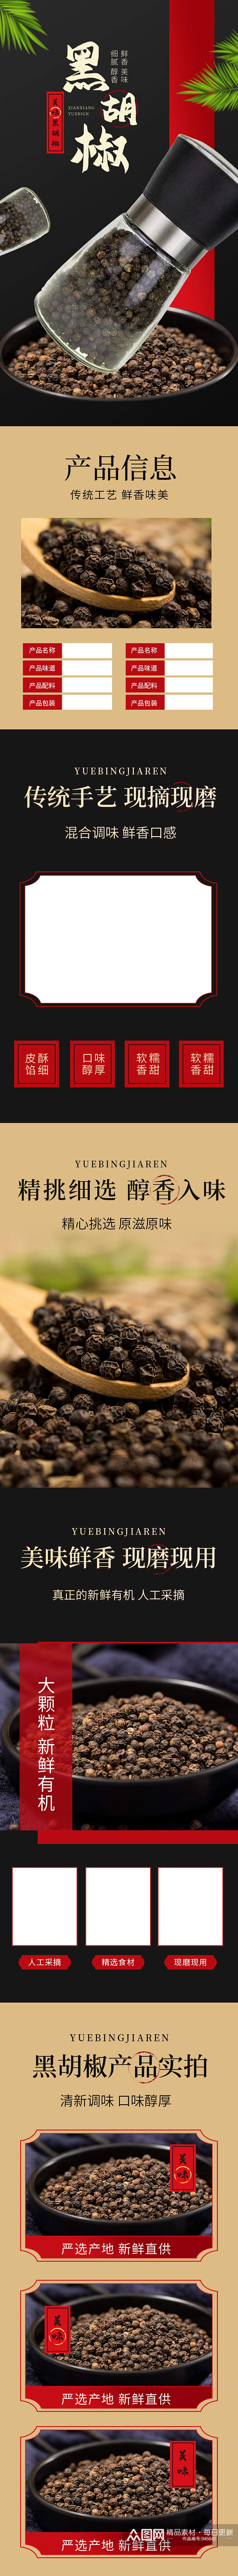 淘宝黑胡椒中国风干货香料黑胡椒详情页素材